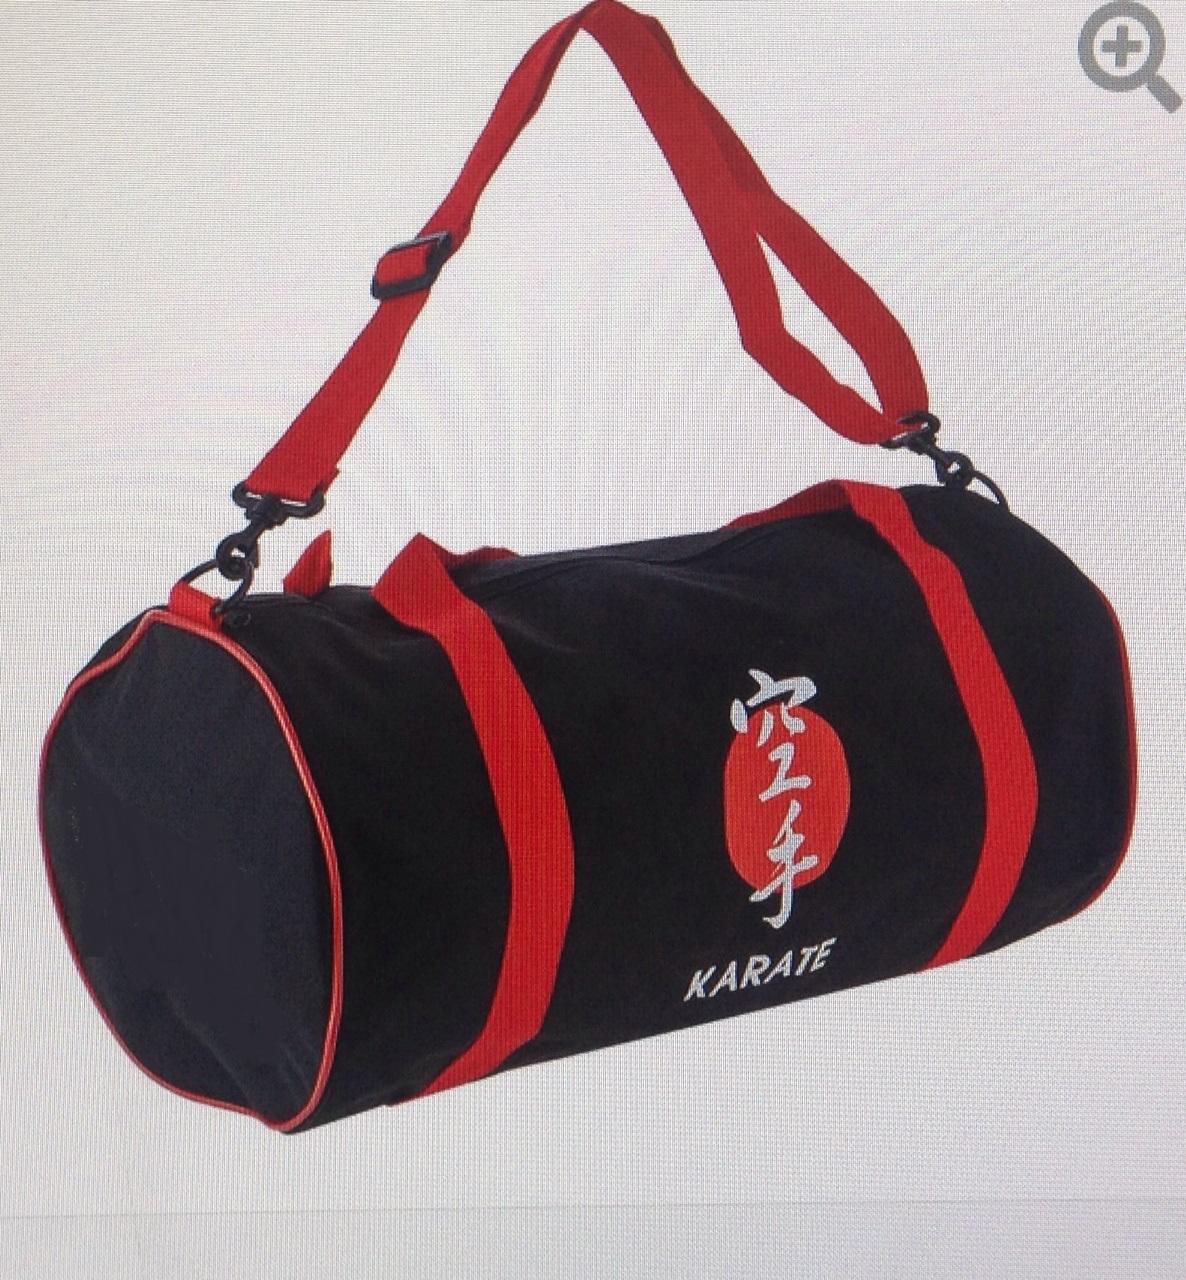 Karate Drum Bag